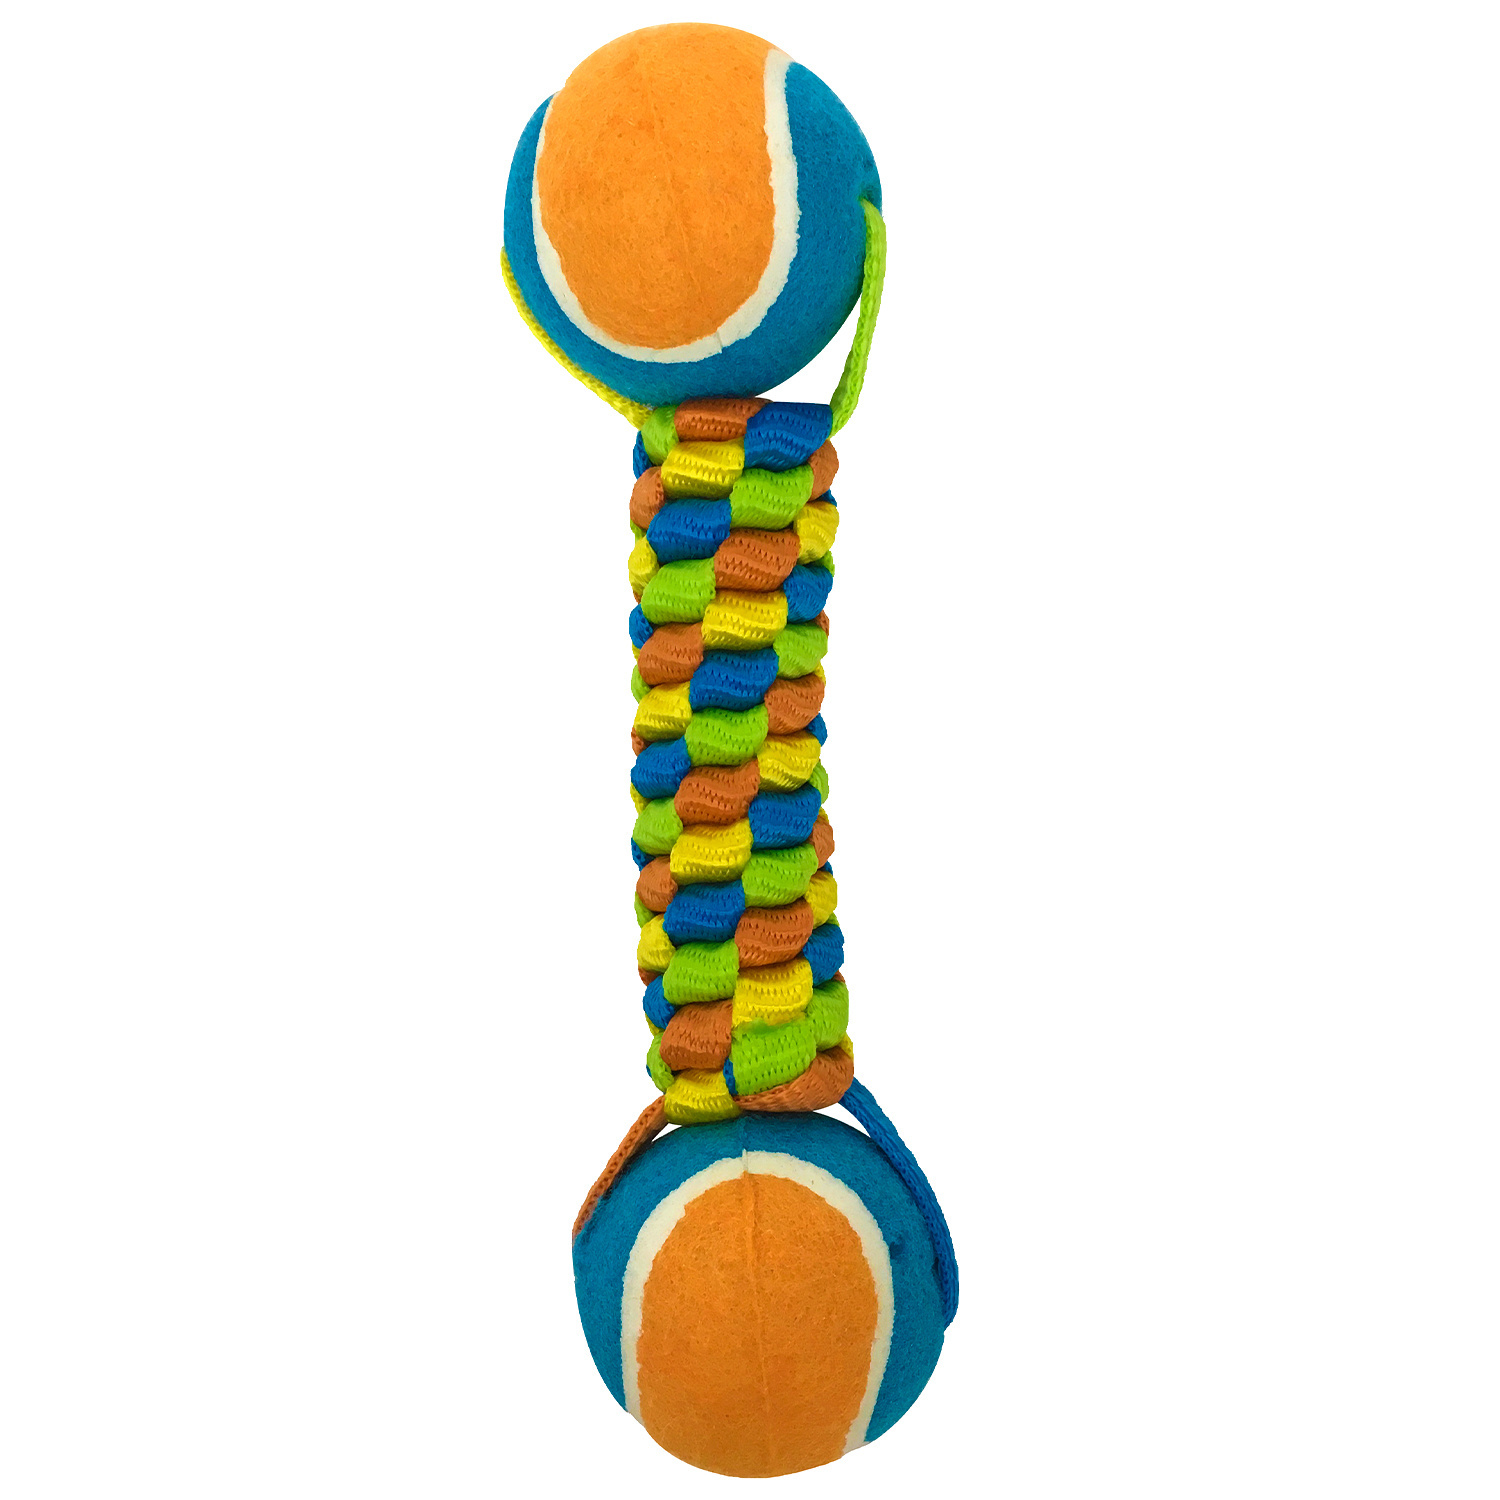 Aromadog игрушка для собак, плетенка с двумя теннисными мячами (222 г) Aromadog игрушка для собак, плетенка с двумя теннисными мячами (222 г) - фото 1